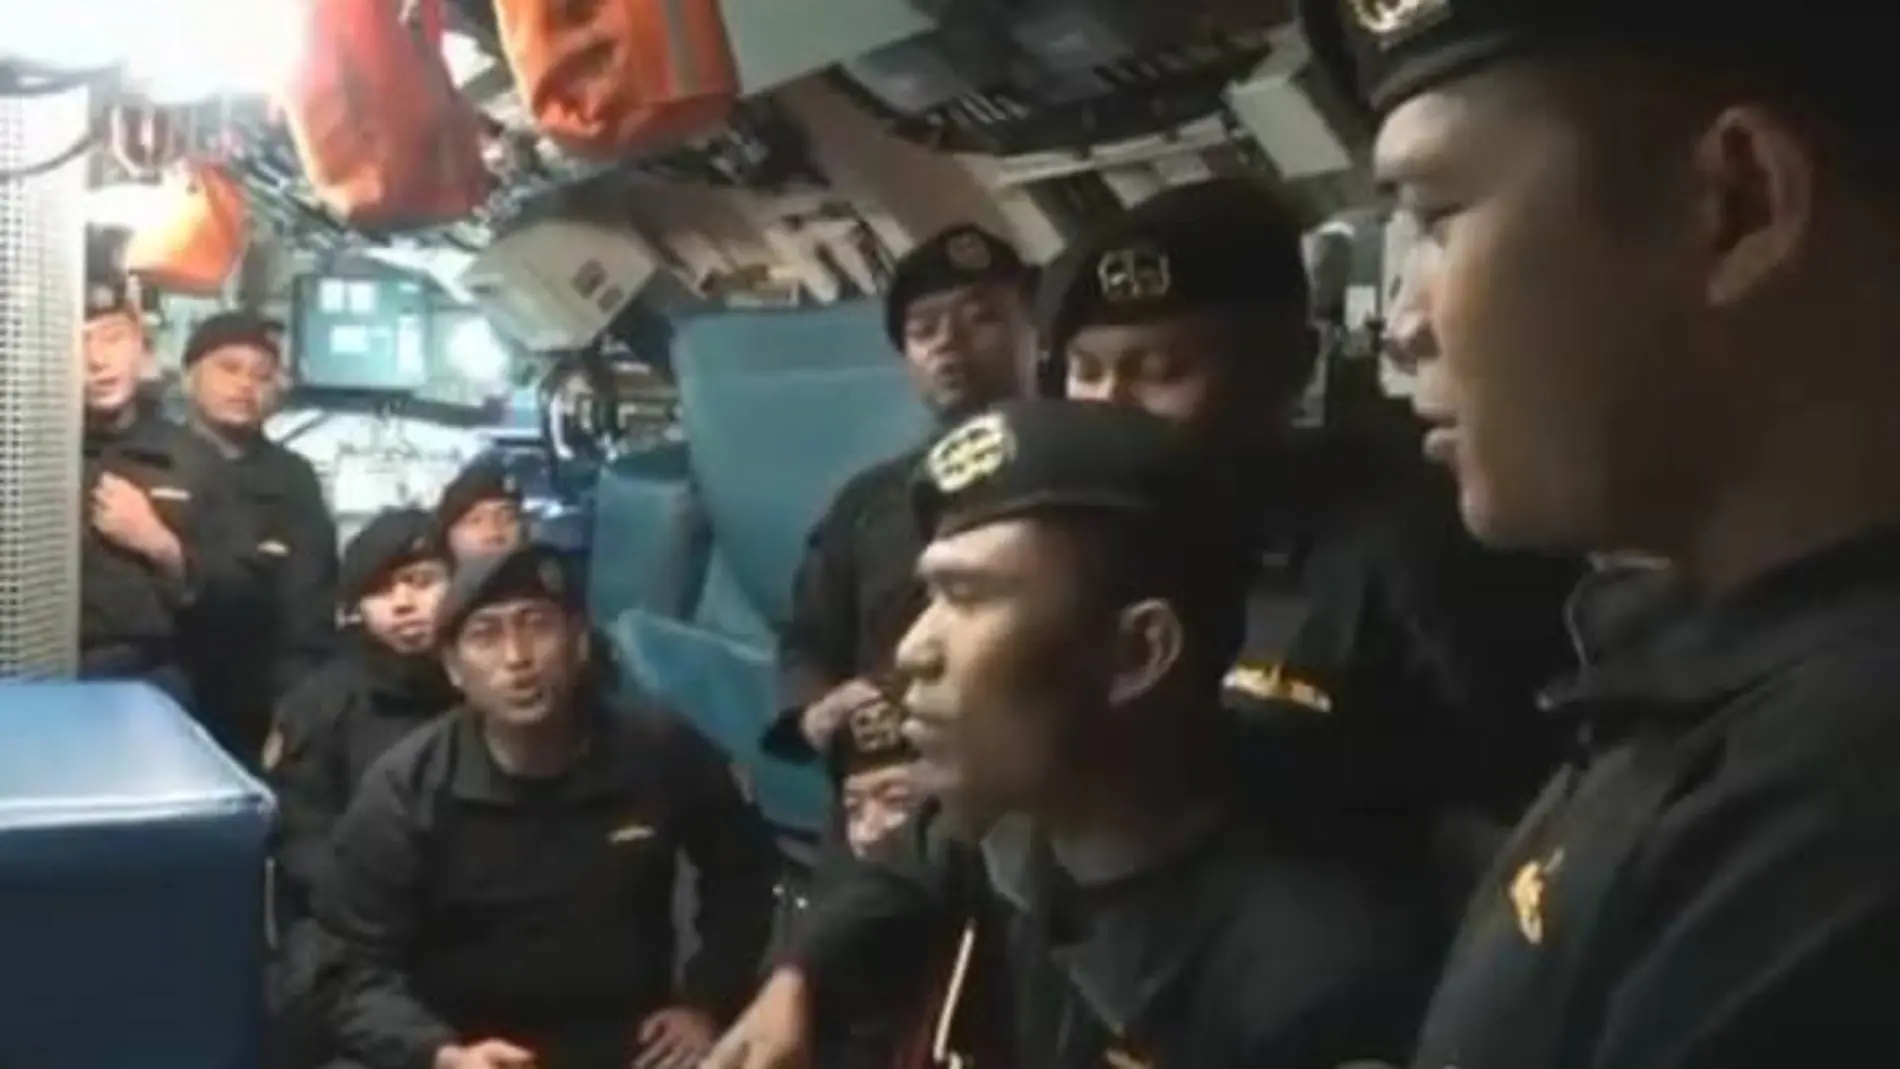 Fotograma del vídeo de los marineros del submarino hundido que ha emocionado a Indonesia